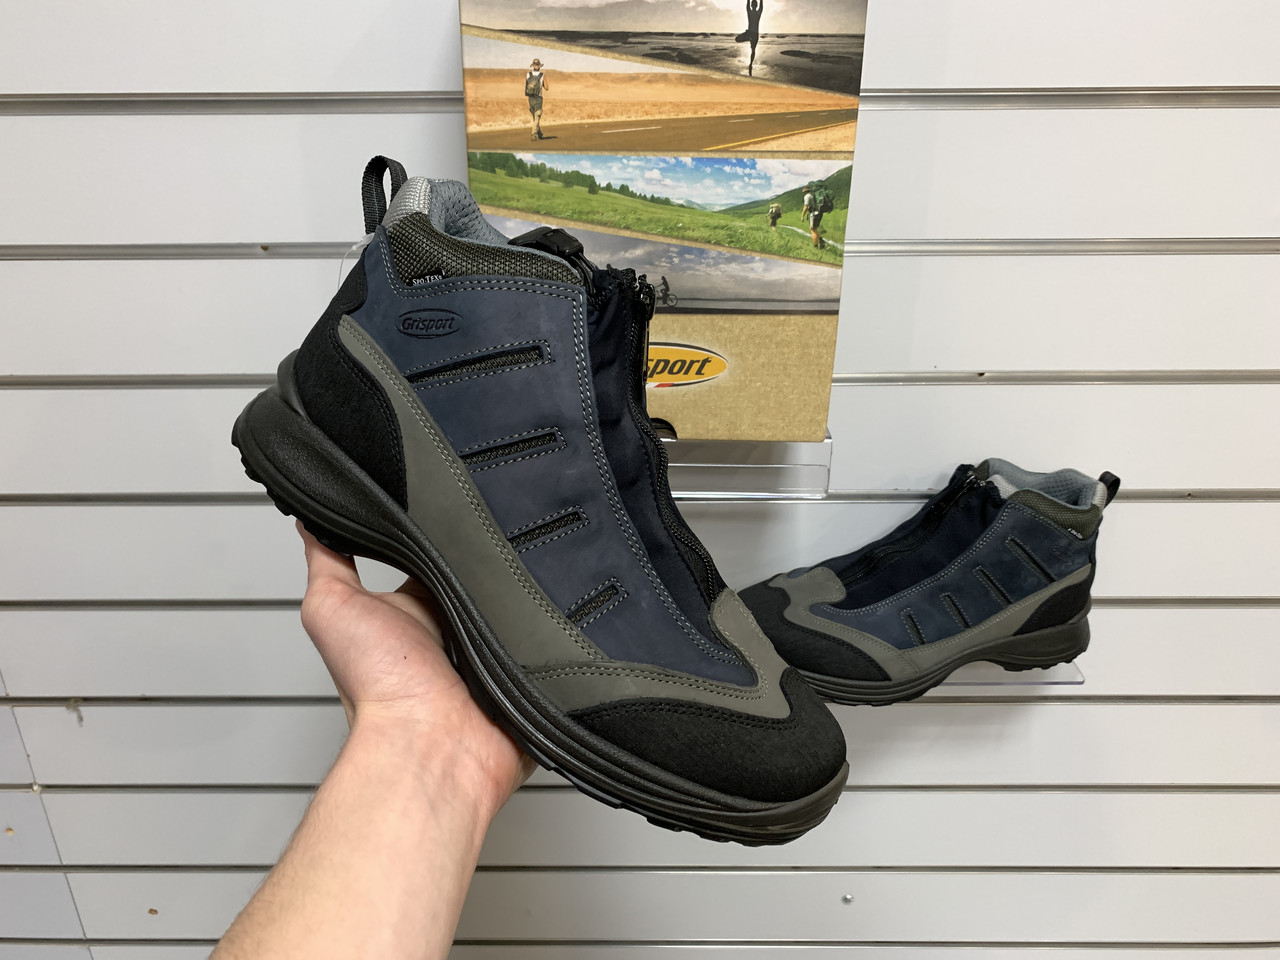 Чоловічі оригінальні зимові термо черевики Grisport Oceano Scuro Nabuk чорні натуральний нубук